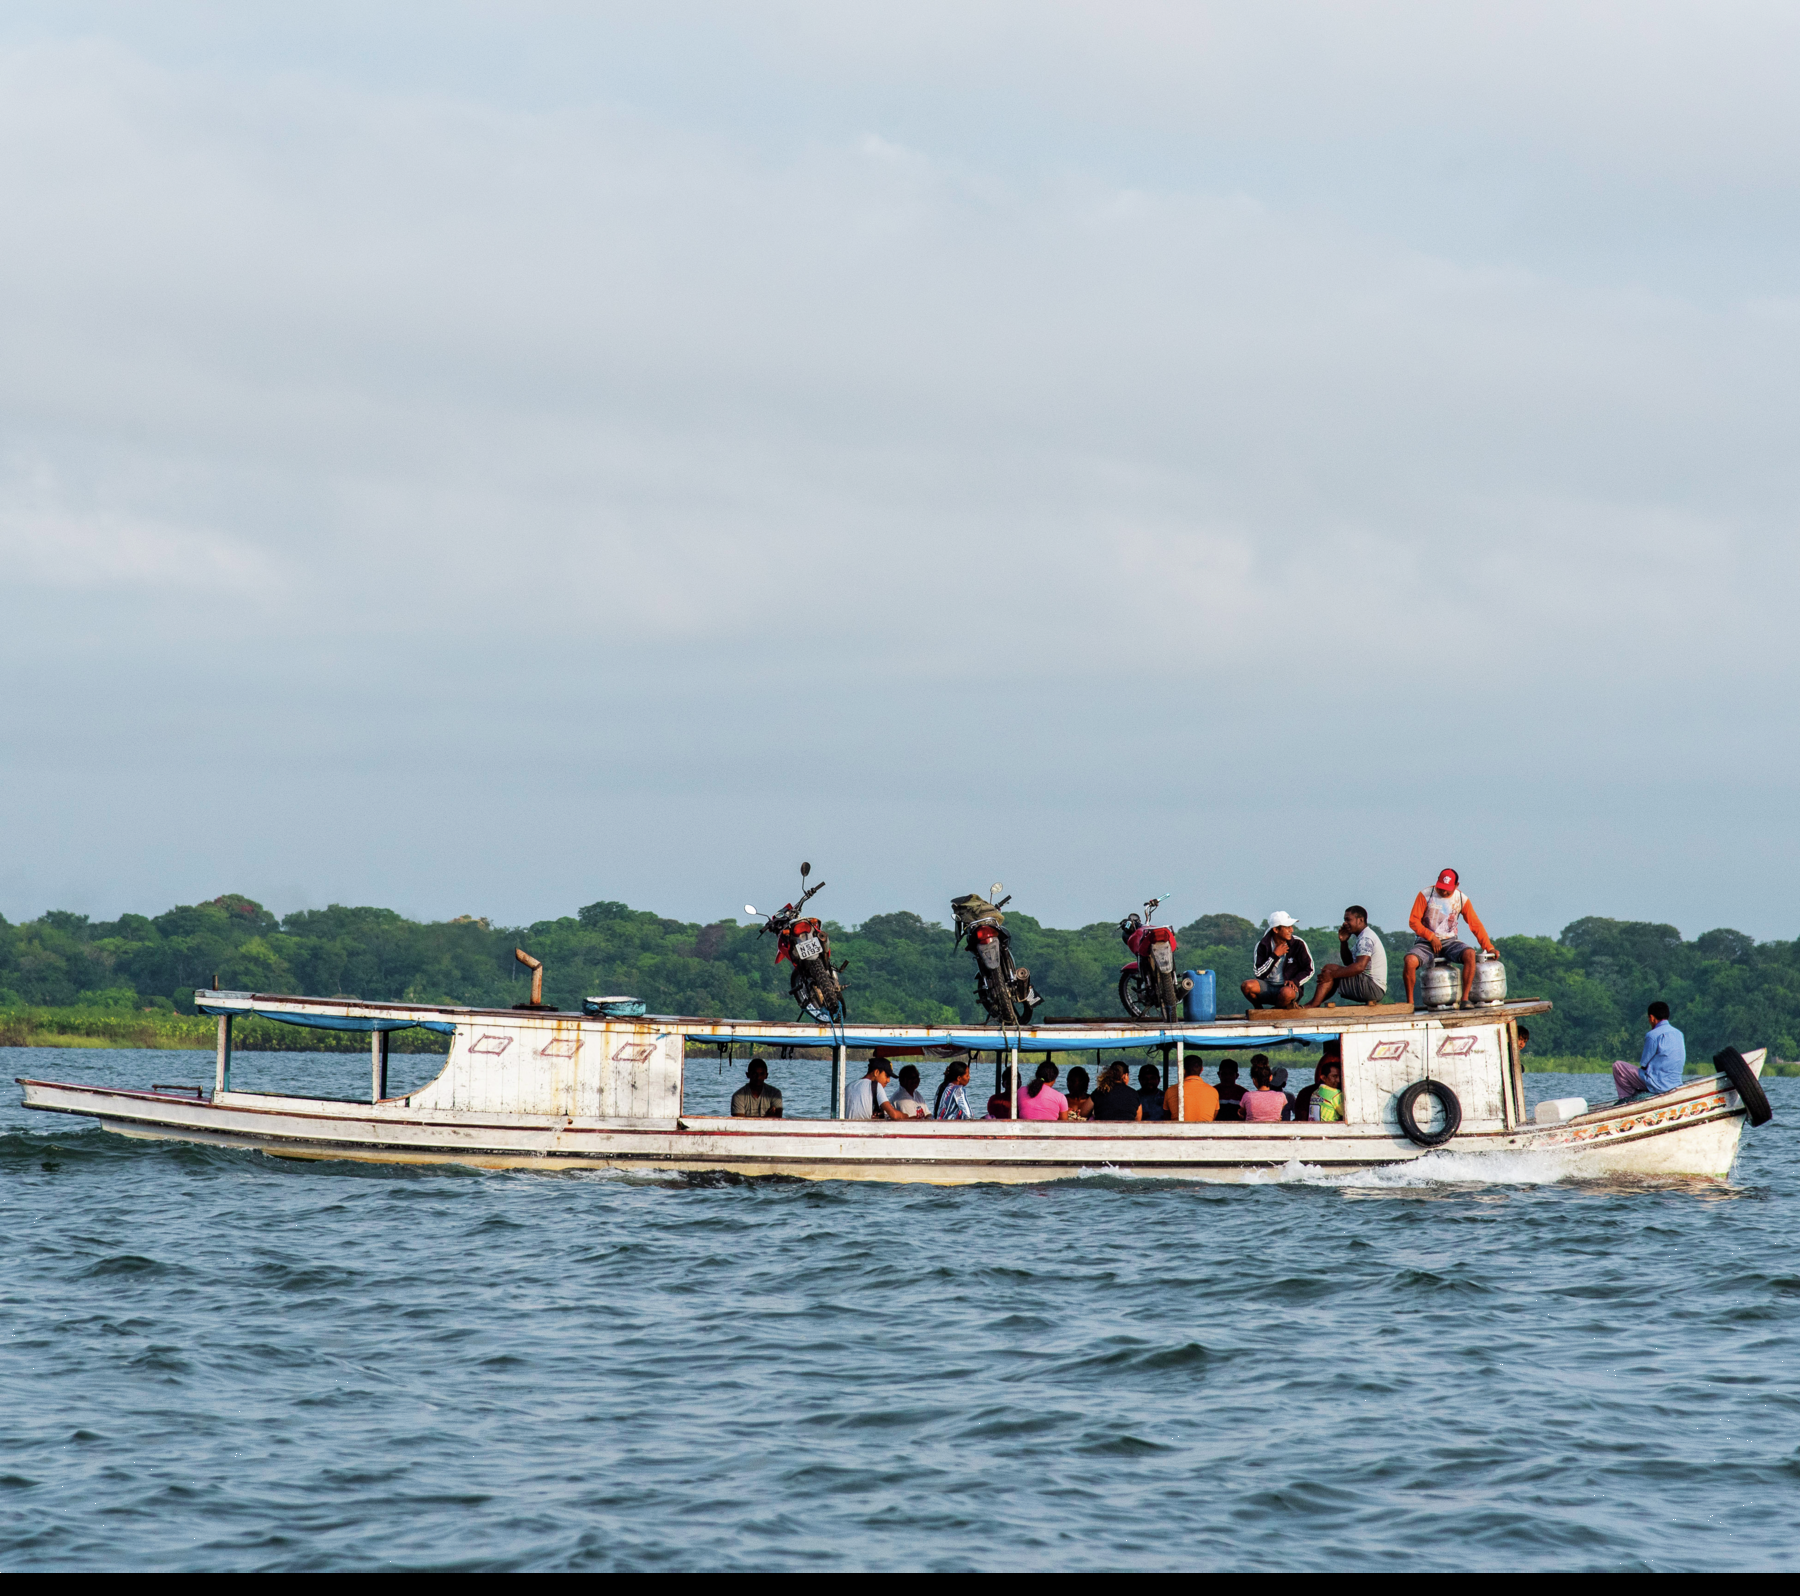 Fotografia. No rio, barco branco transportando várias pessoas de diferentes etnias. Na parte superior do barco, há pessoas e motocicletas. Ao fundo, árvores e céu azul com nuvens.